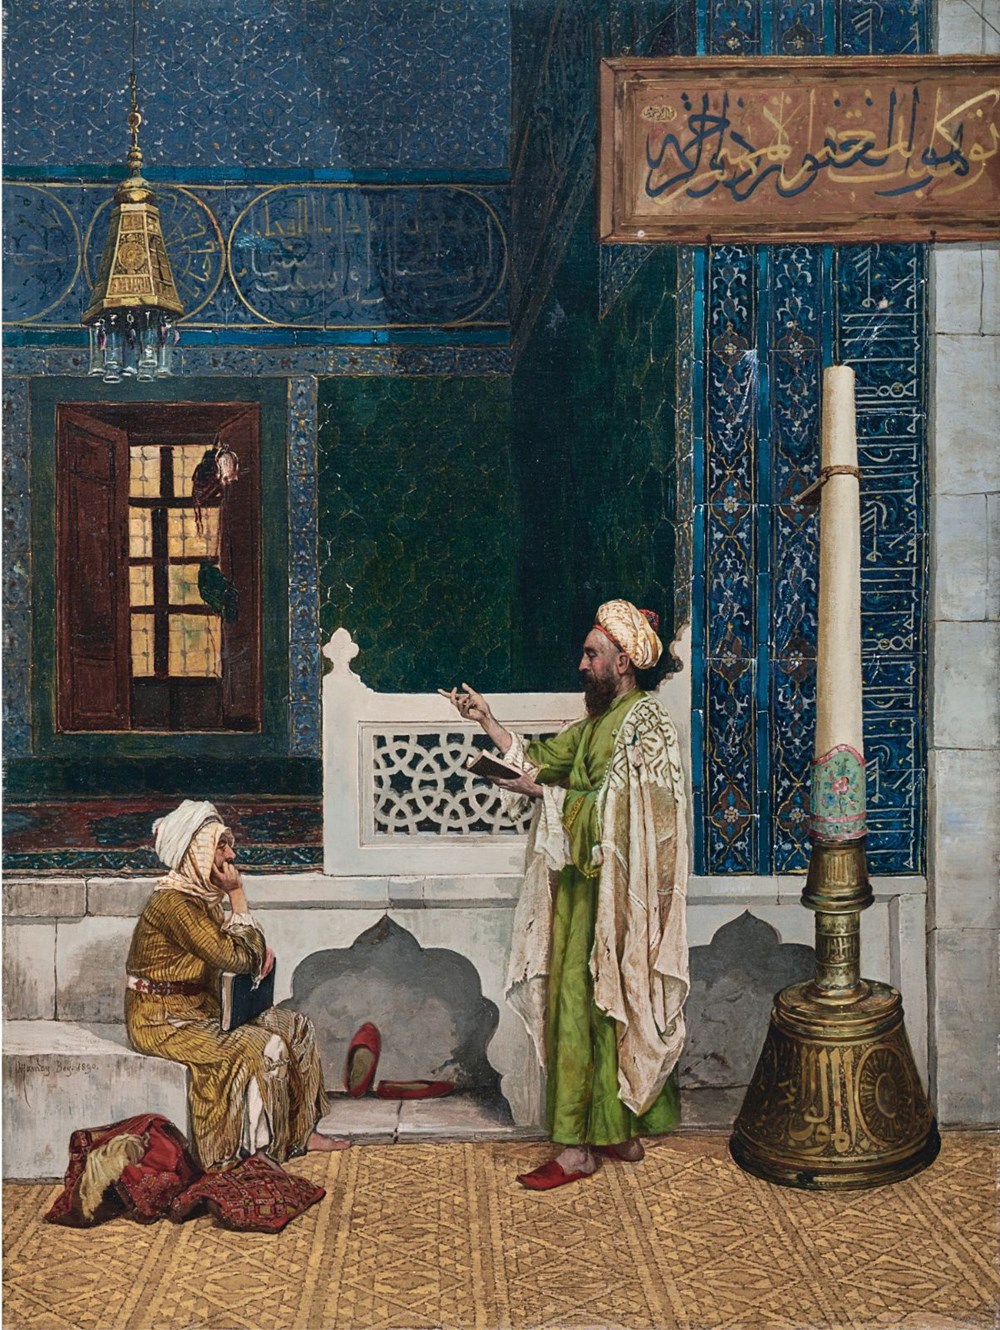 3 haftada 3 tablosu rekor fiyata satılan Osman Hamdi Bey hakkında bilmeniz gerekenler - 4